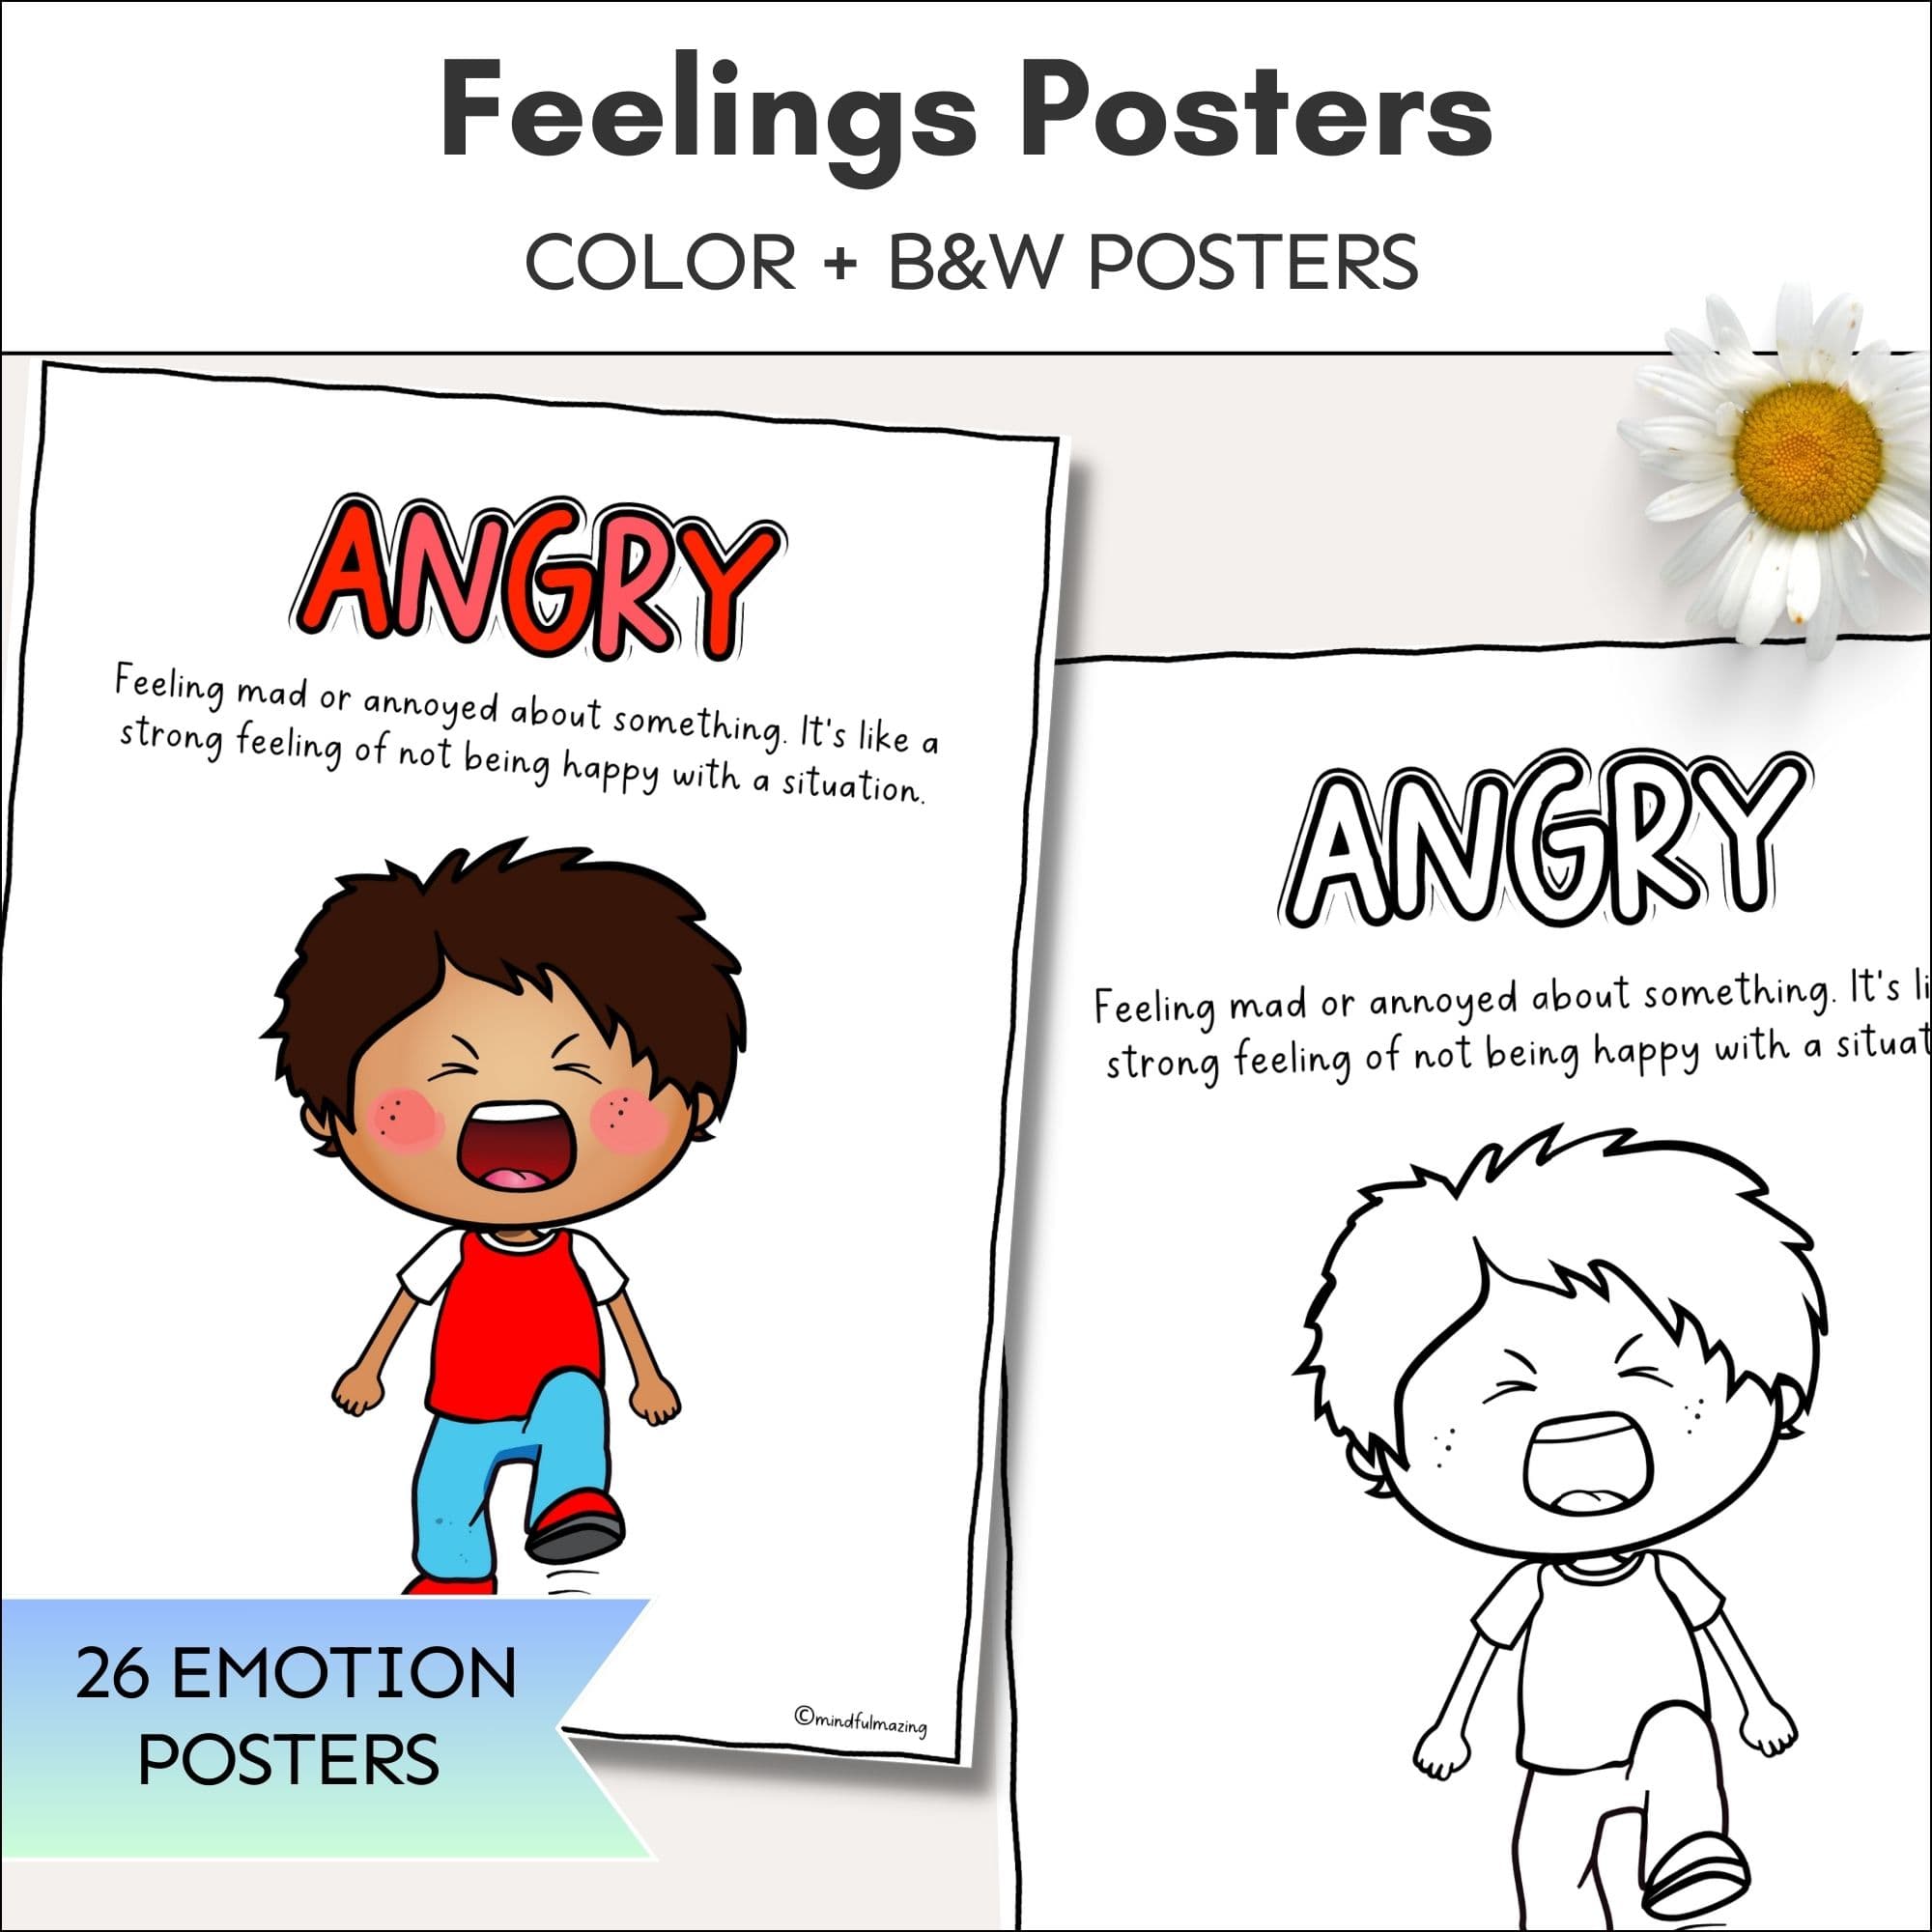 Feelings Fun Kit (Posters + Worksheets)